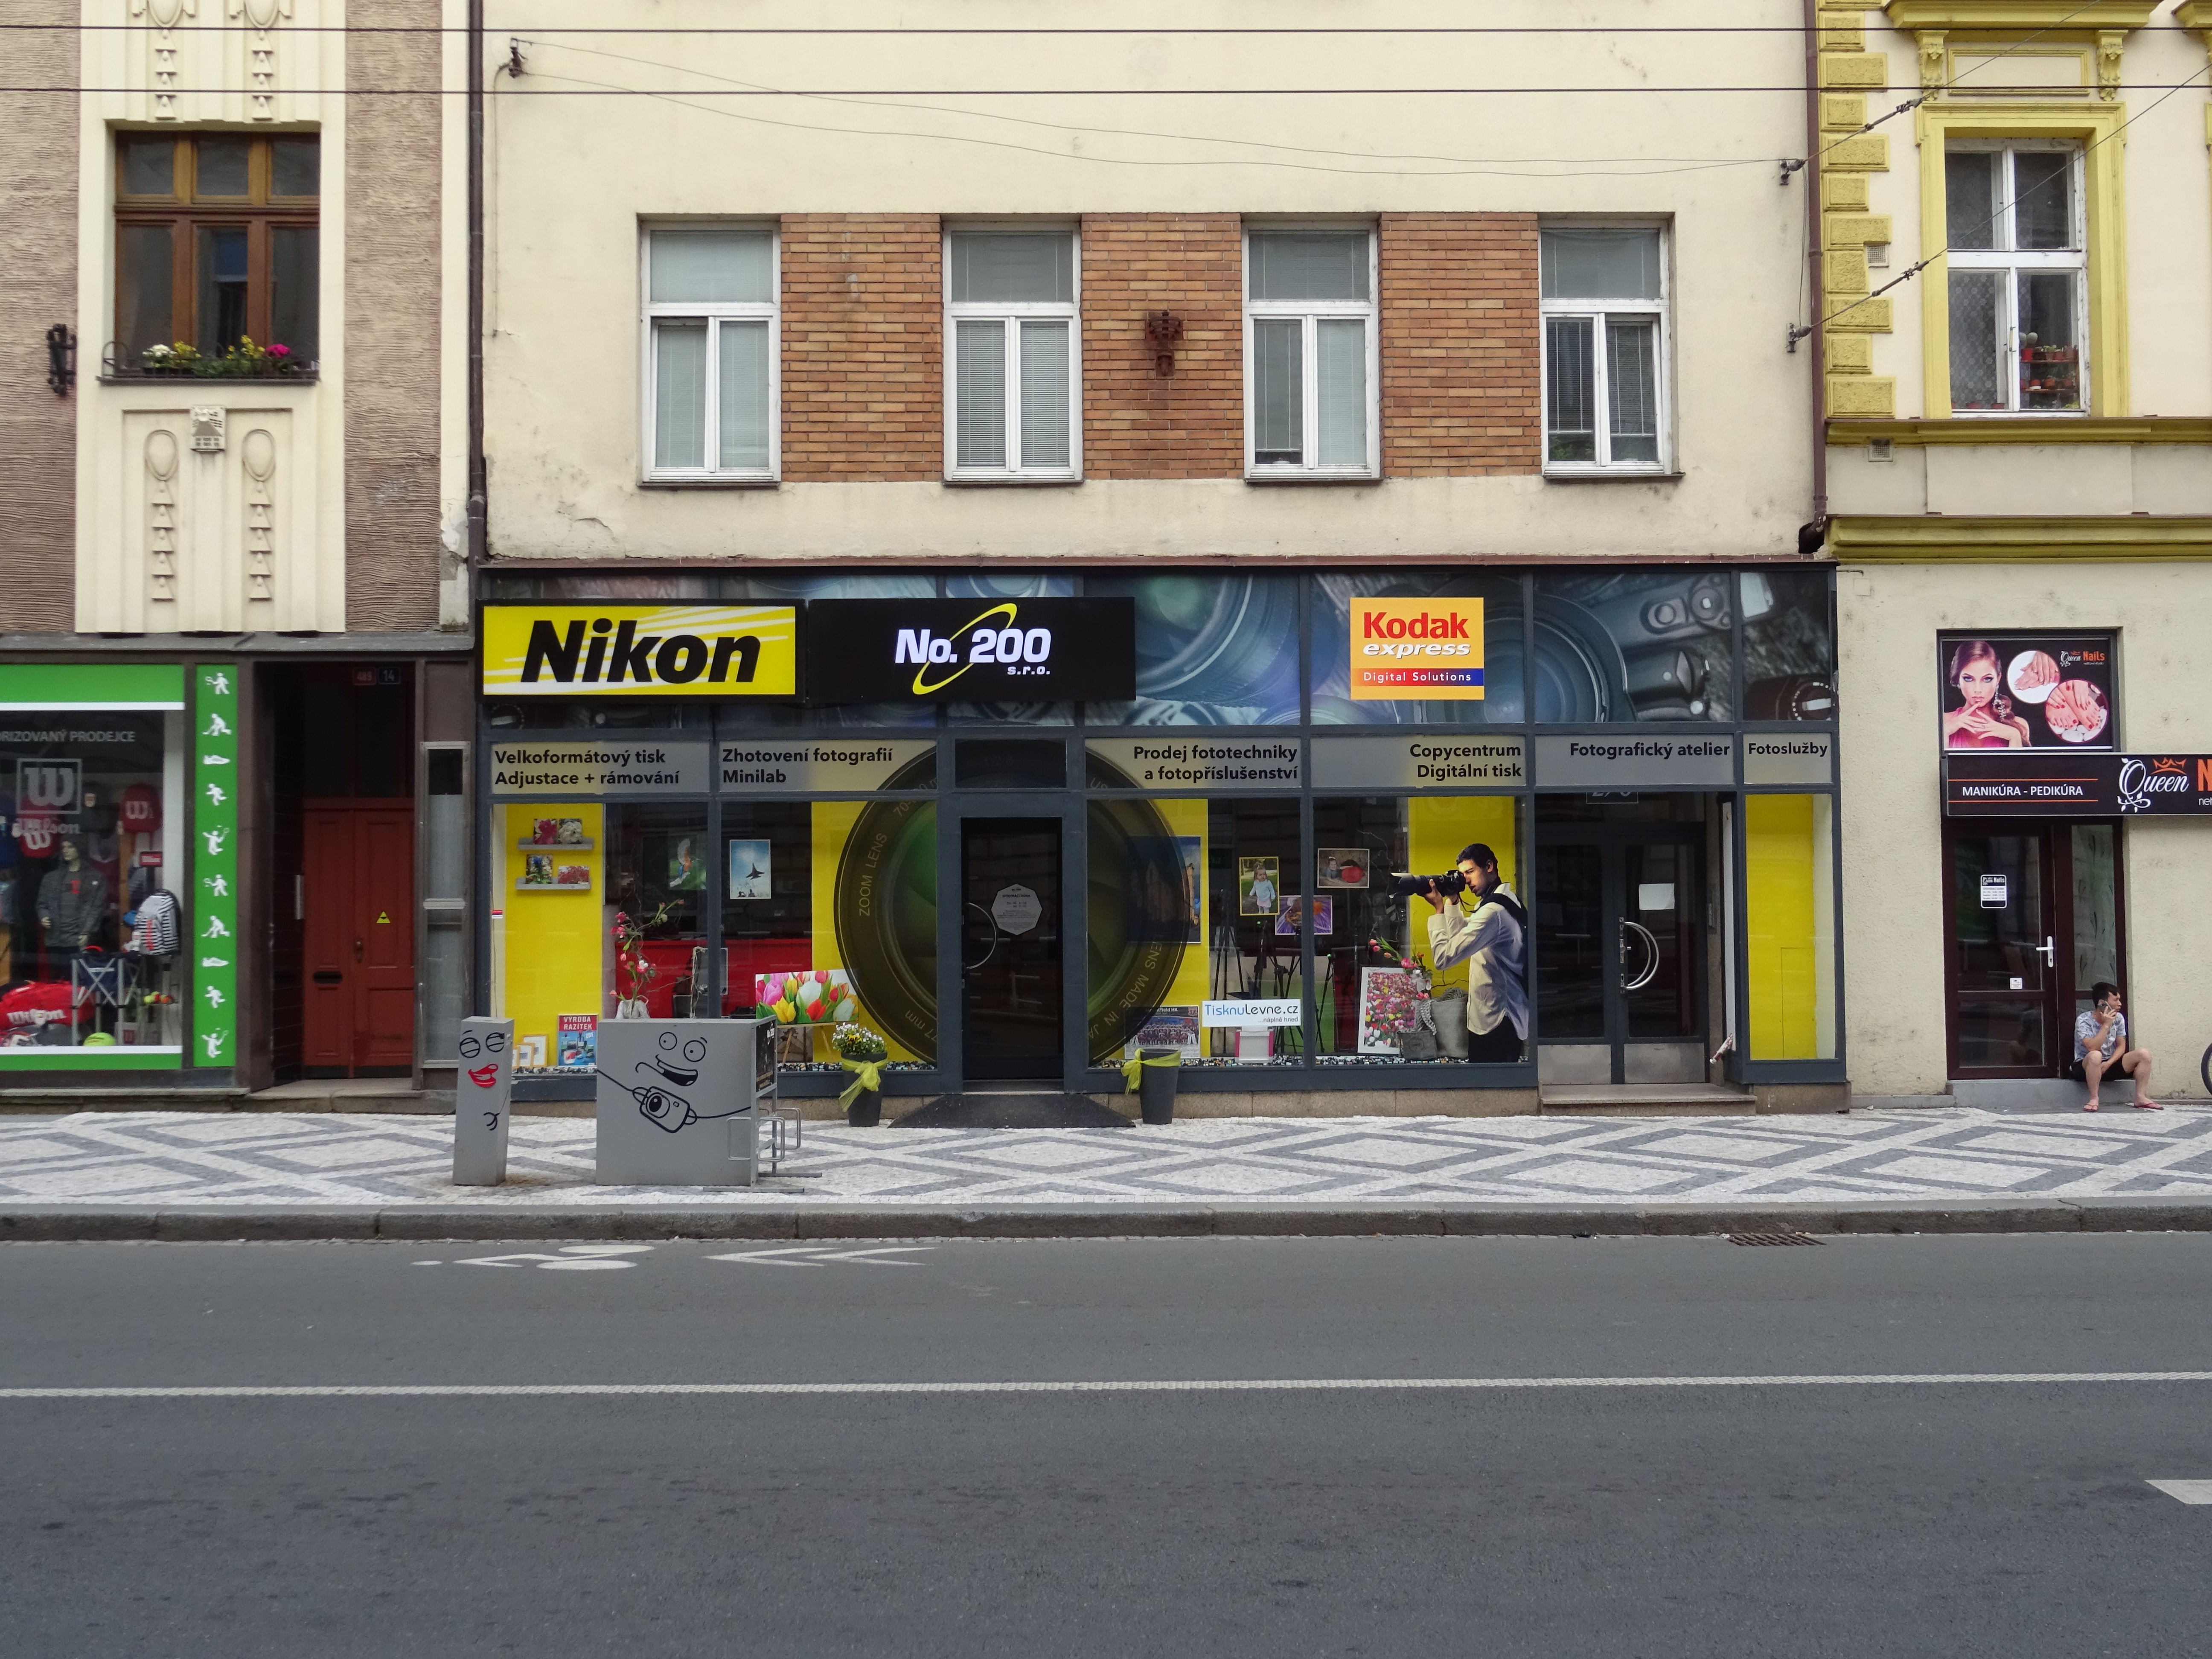 Streetart - No. 200 Nikon - Hradec Králové - polep obchodu - design - světelné reklamy